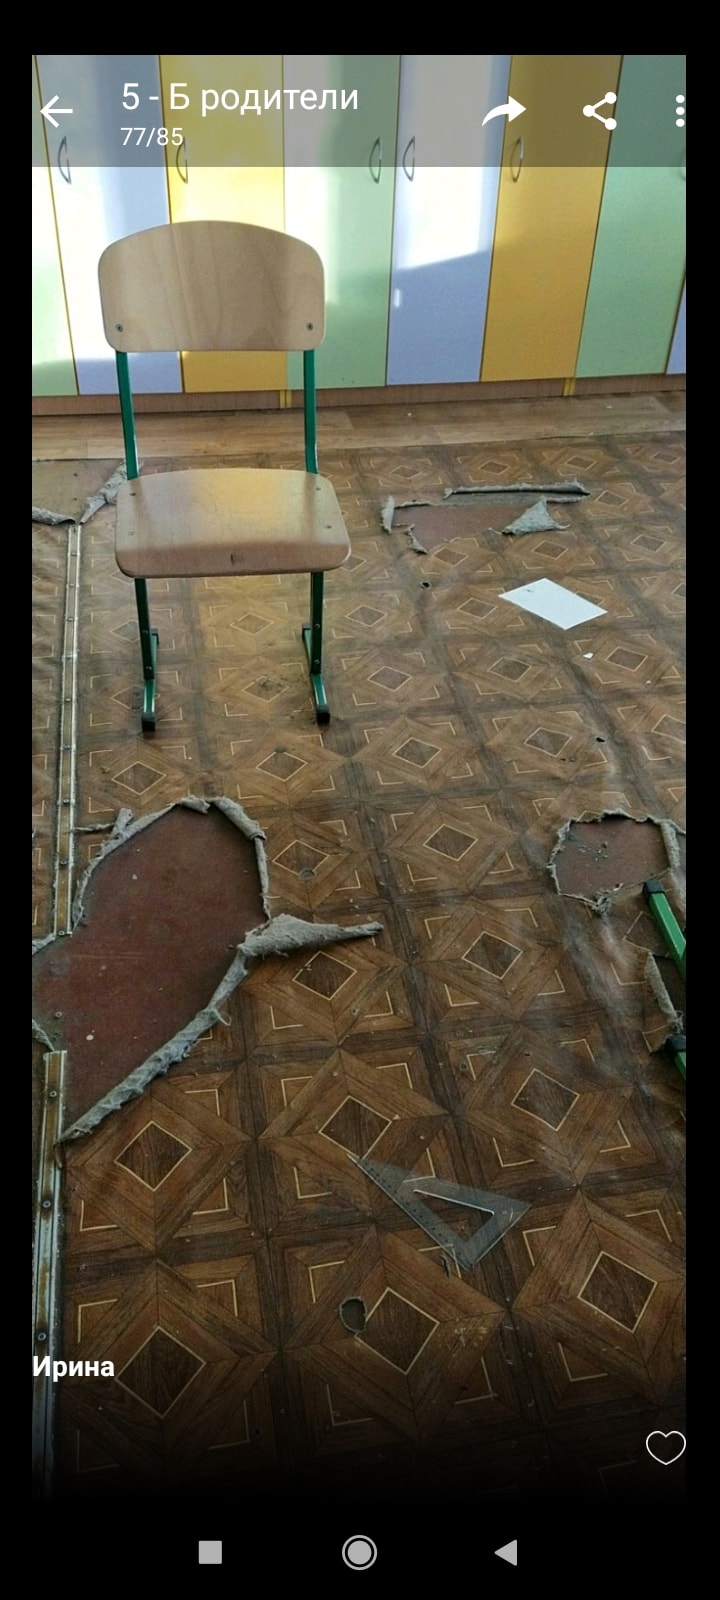 В школе Киева возник конфликт из-за дырявого линолеума в классе: один ребенок травмировался